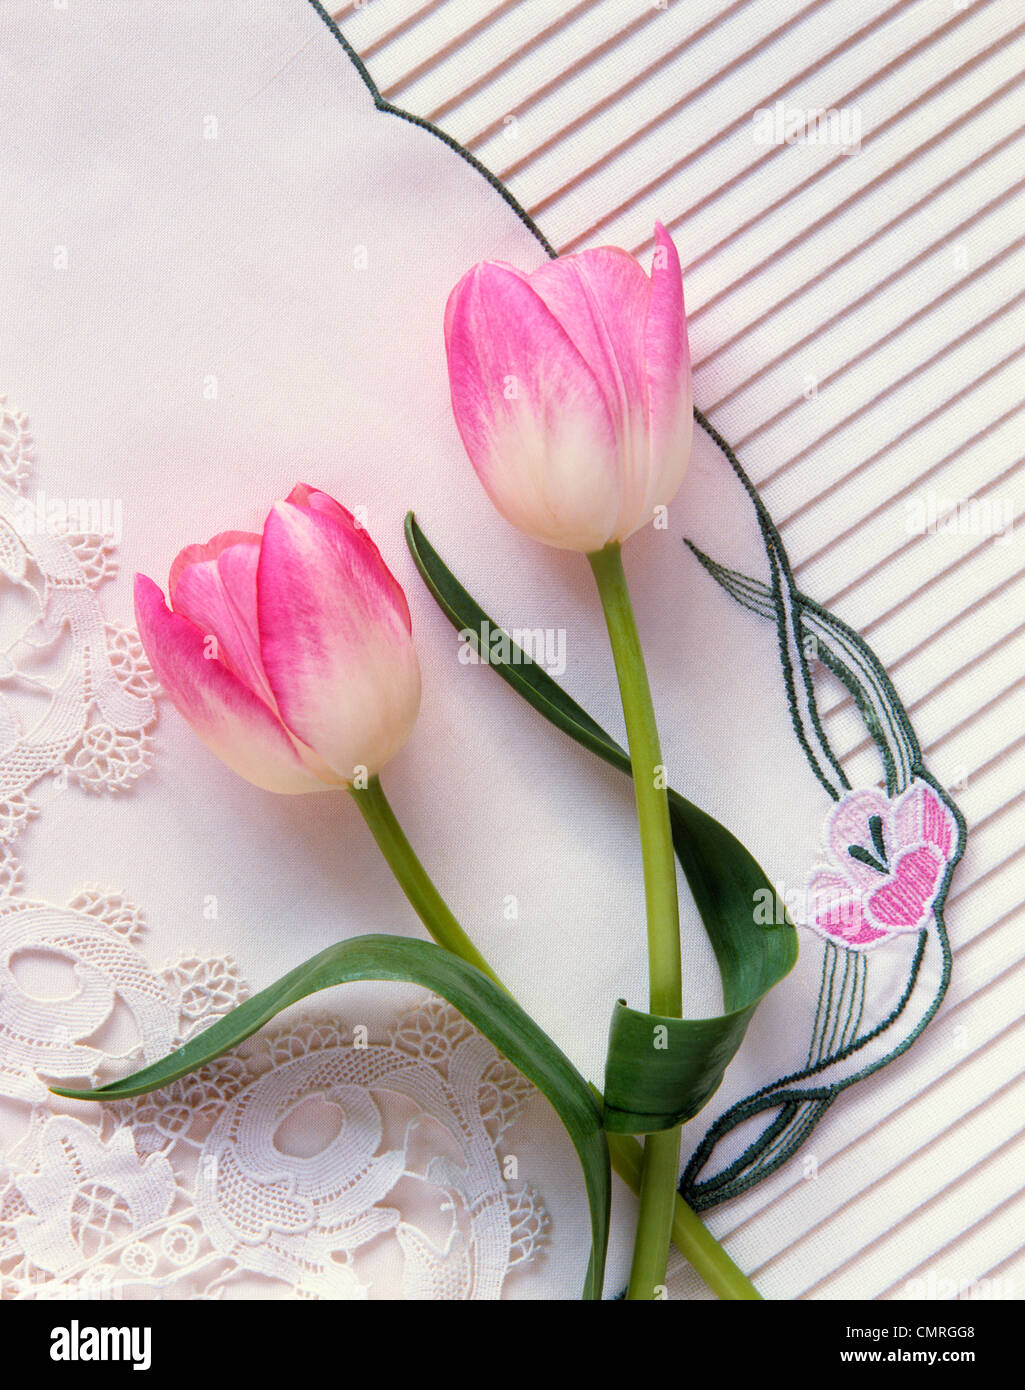 Juego de individuales blancos con bordados de flor rosa